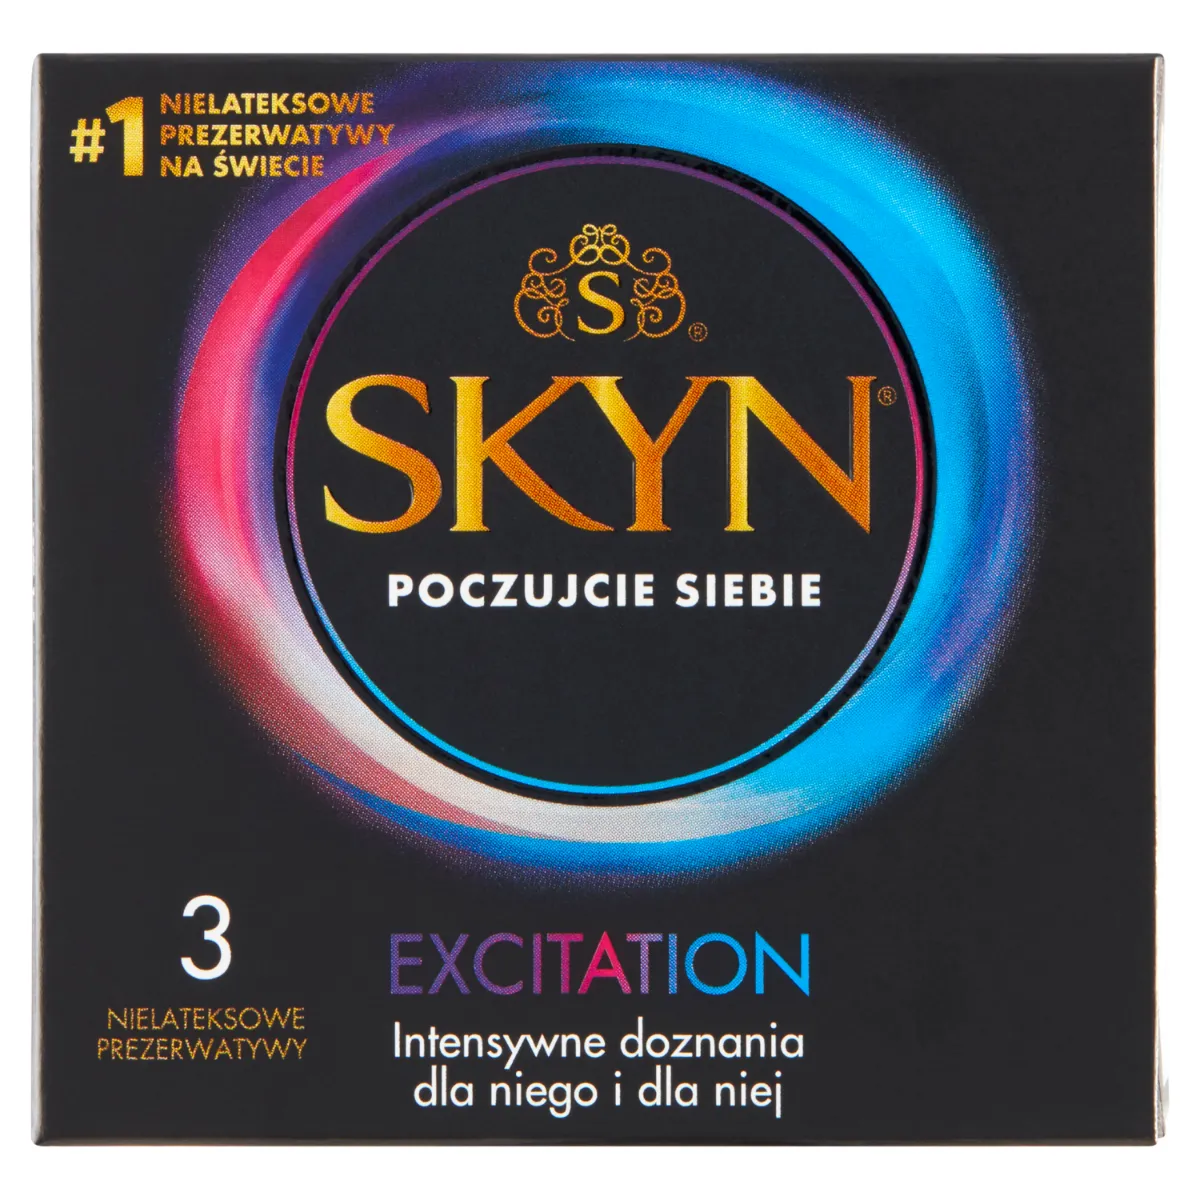 Skyn Excitation, nielateksowe prezerwatywy, 3 sztuki